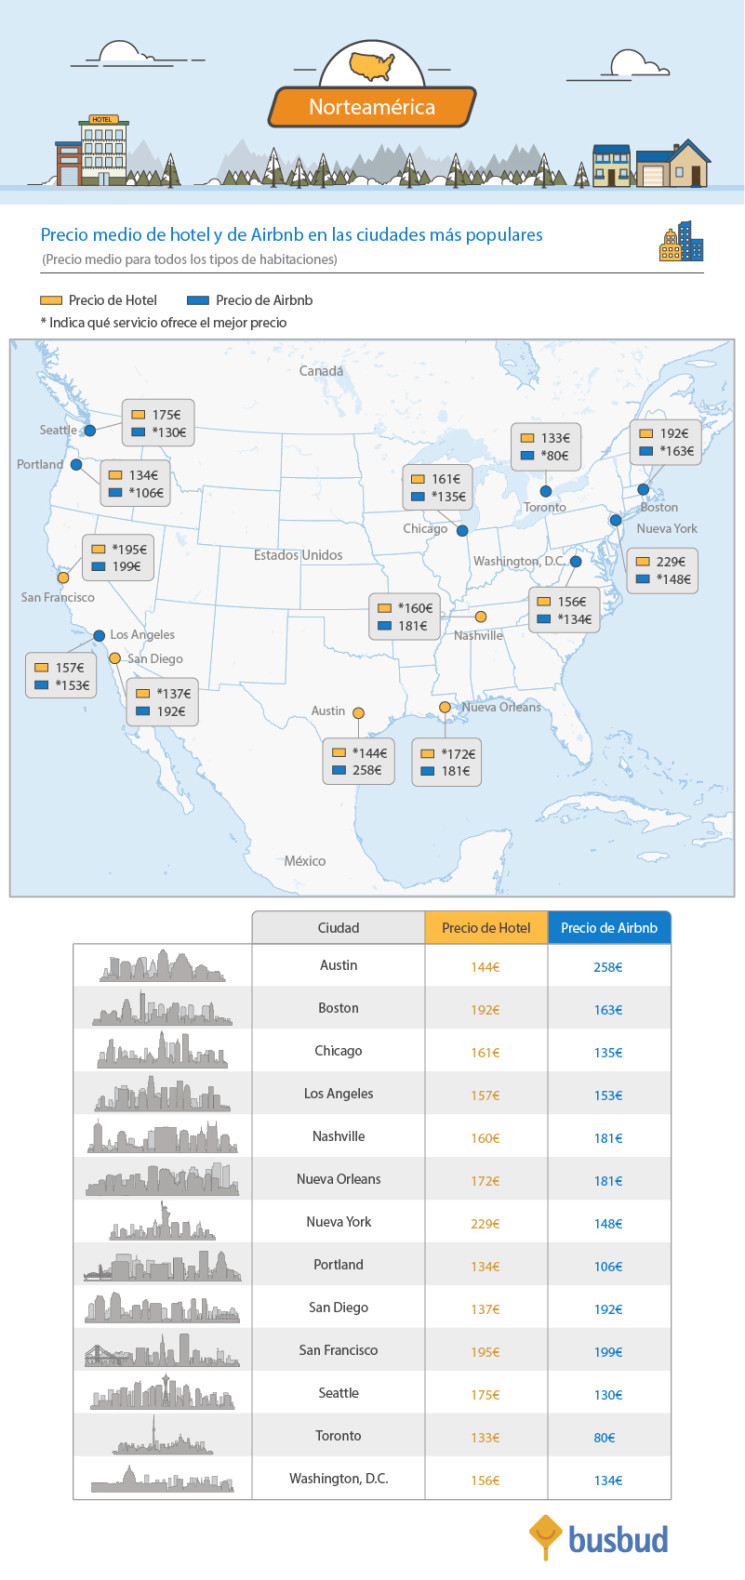 Norteamérica - Precio medio de hotel y de Airbnb en las ciudades más populares.